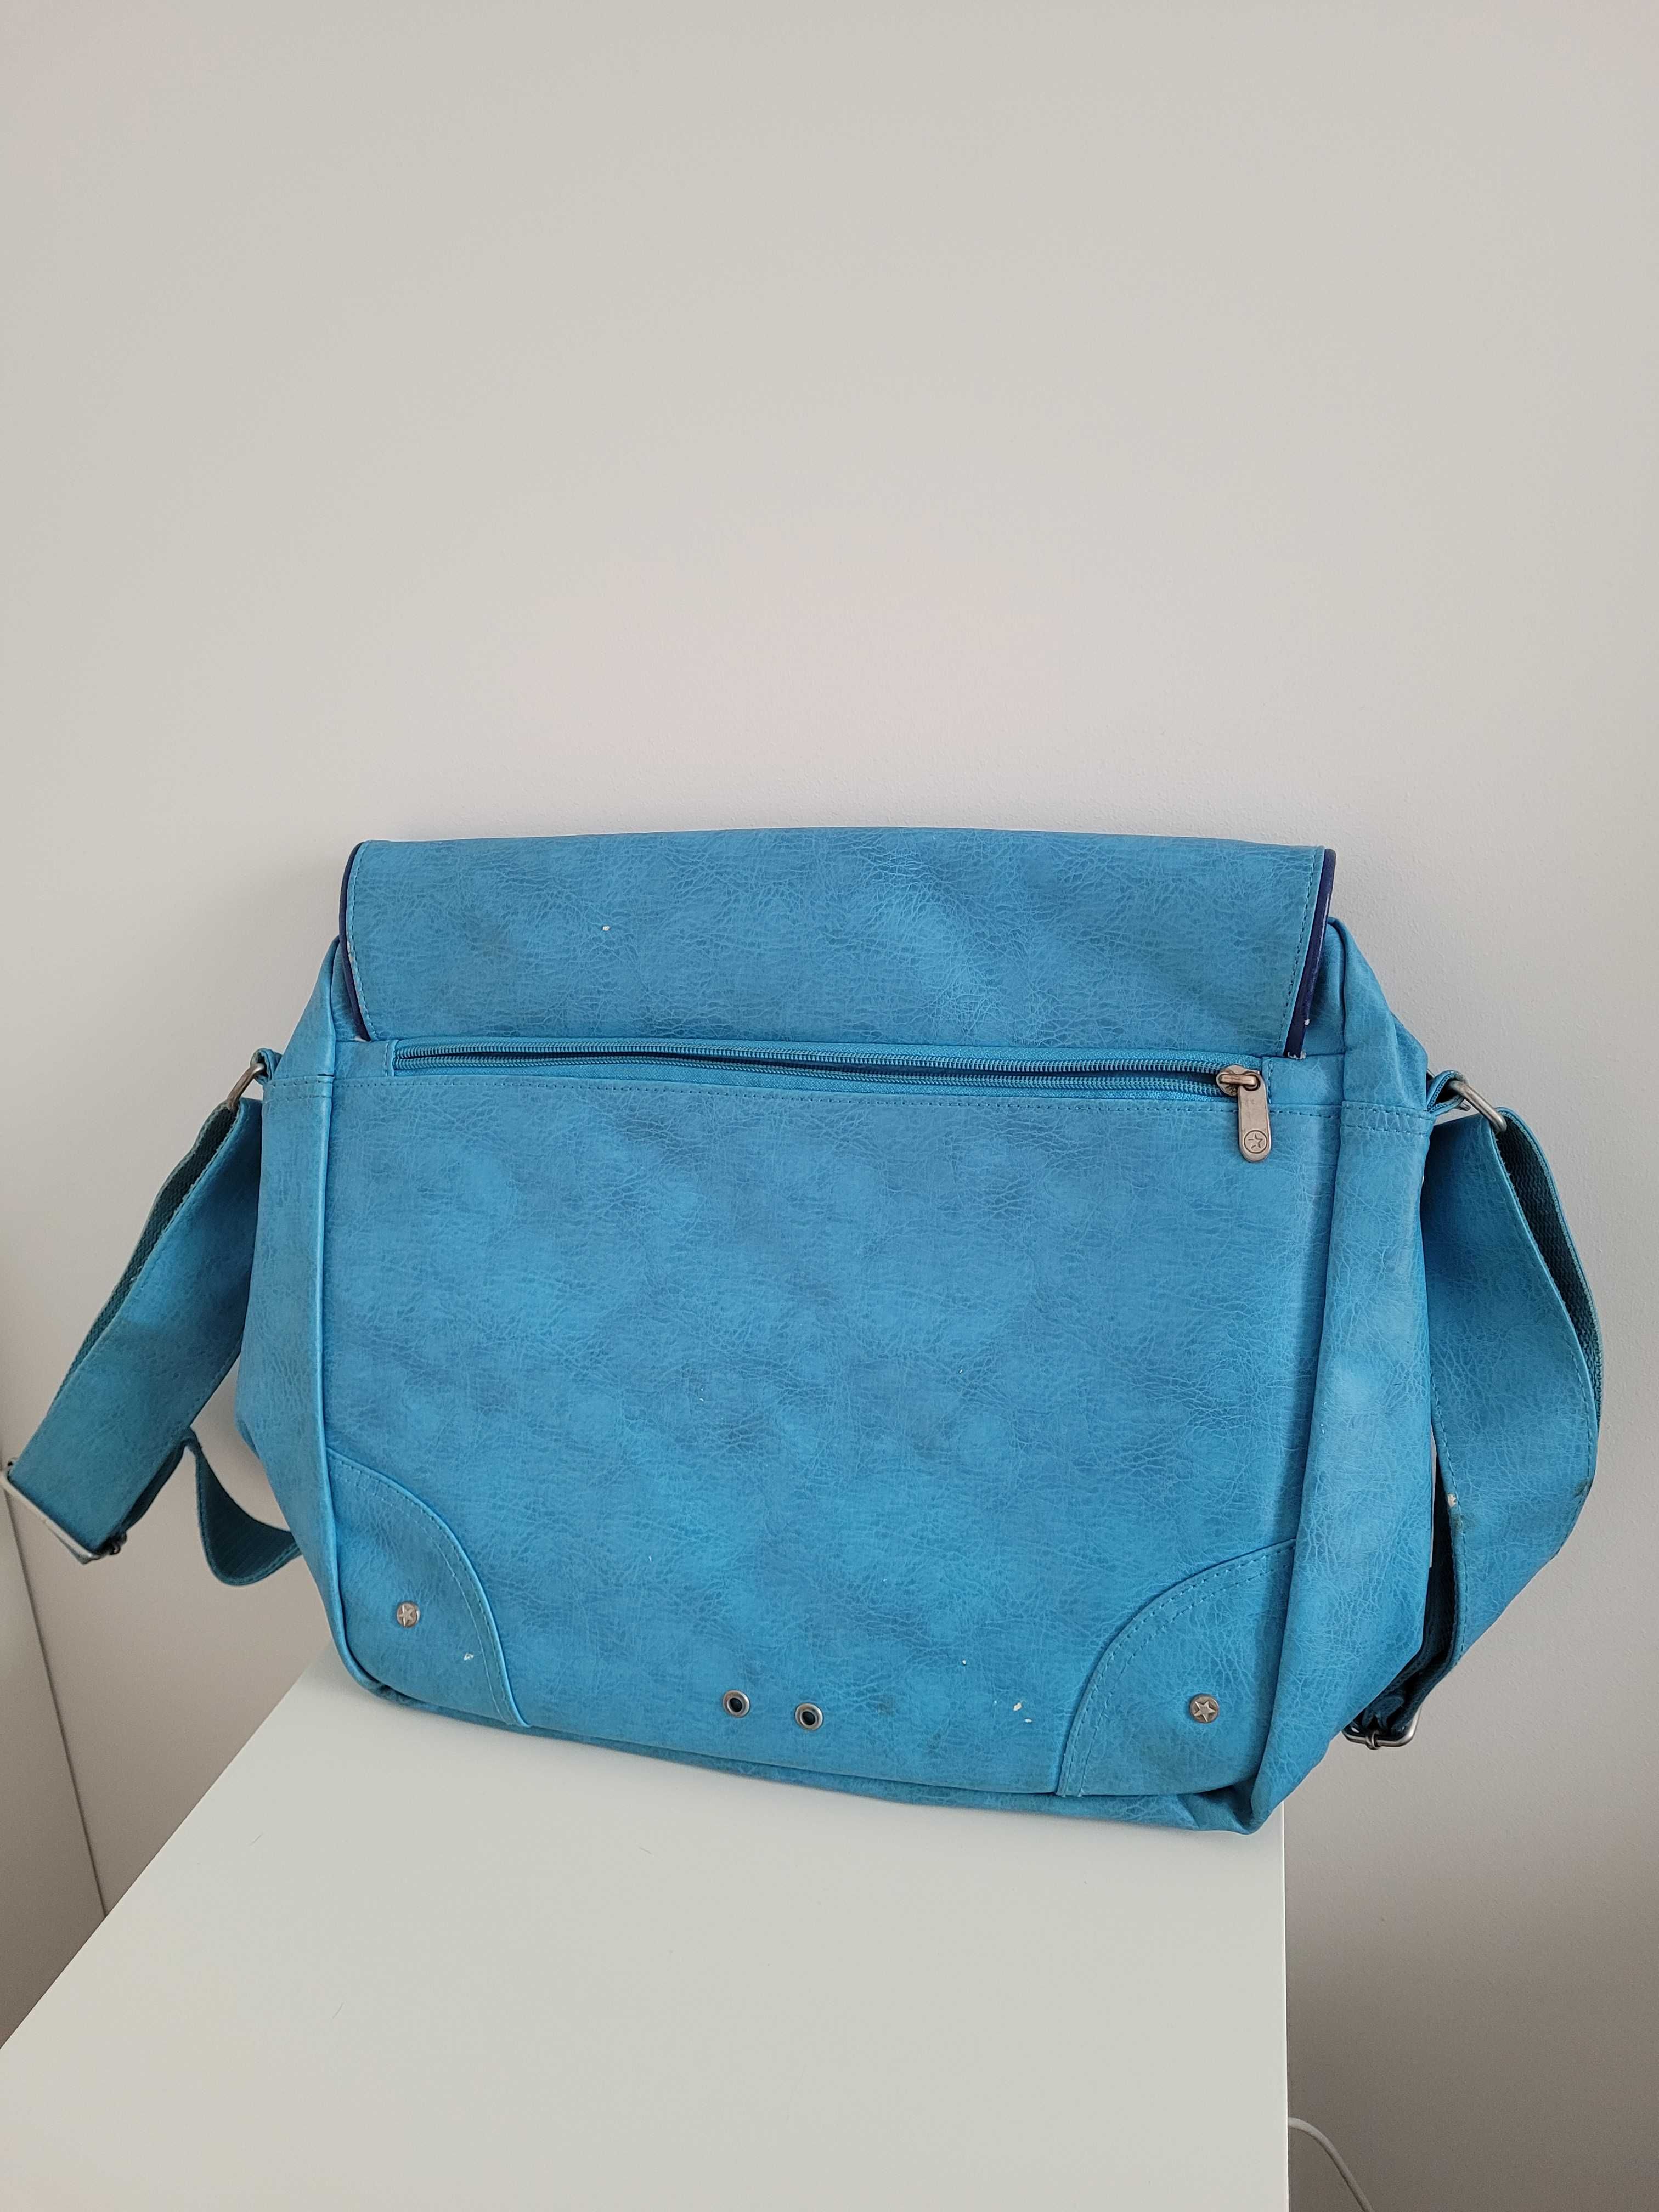 Niebieska duża torba na ramię Converse, zmieści laptopa i zeszyt A4